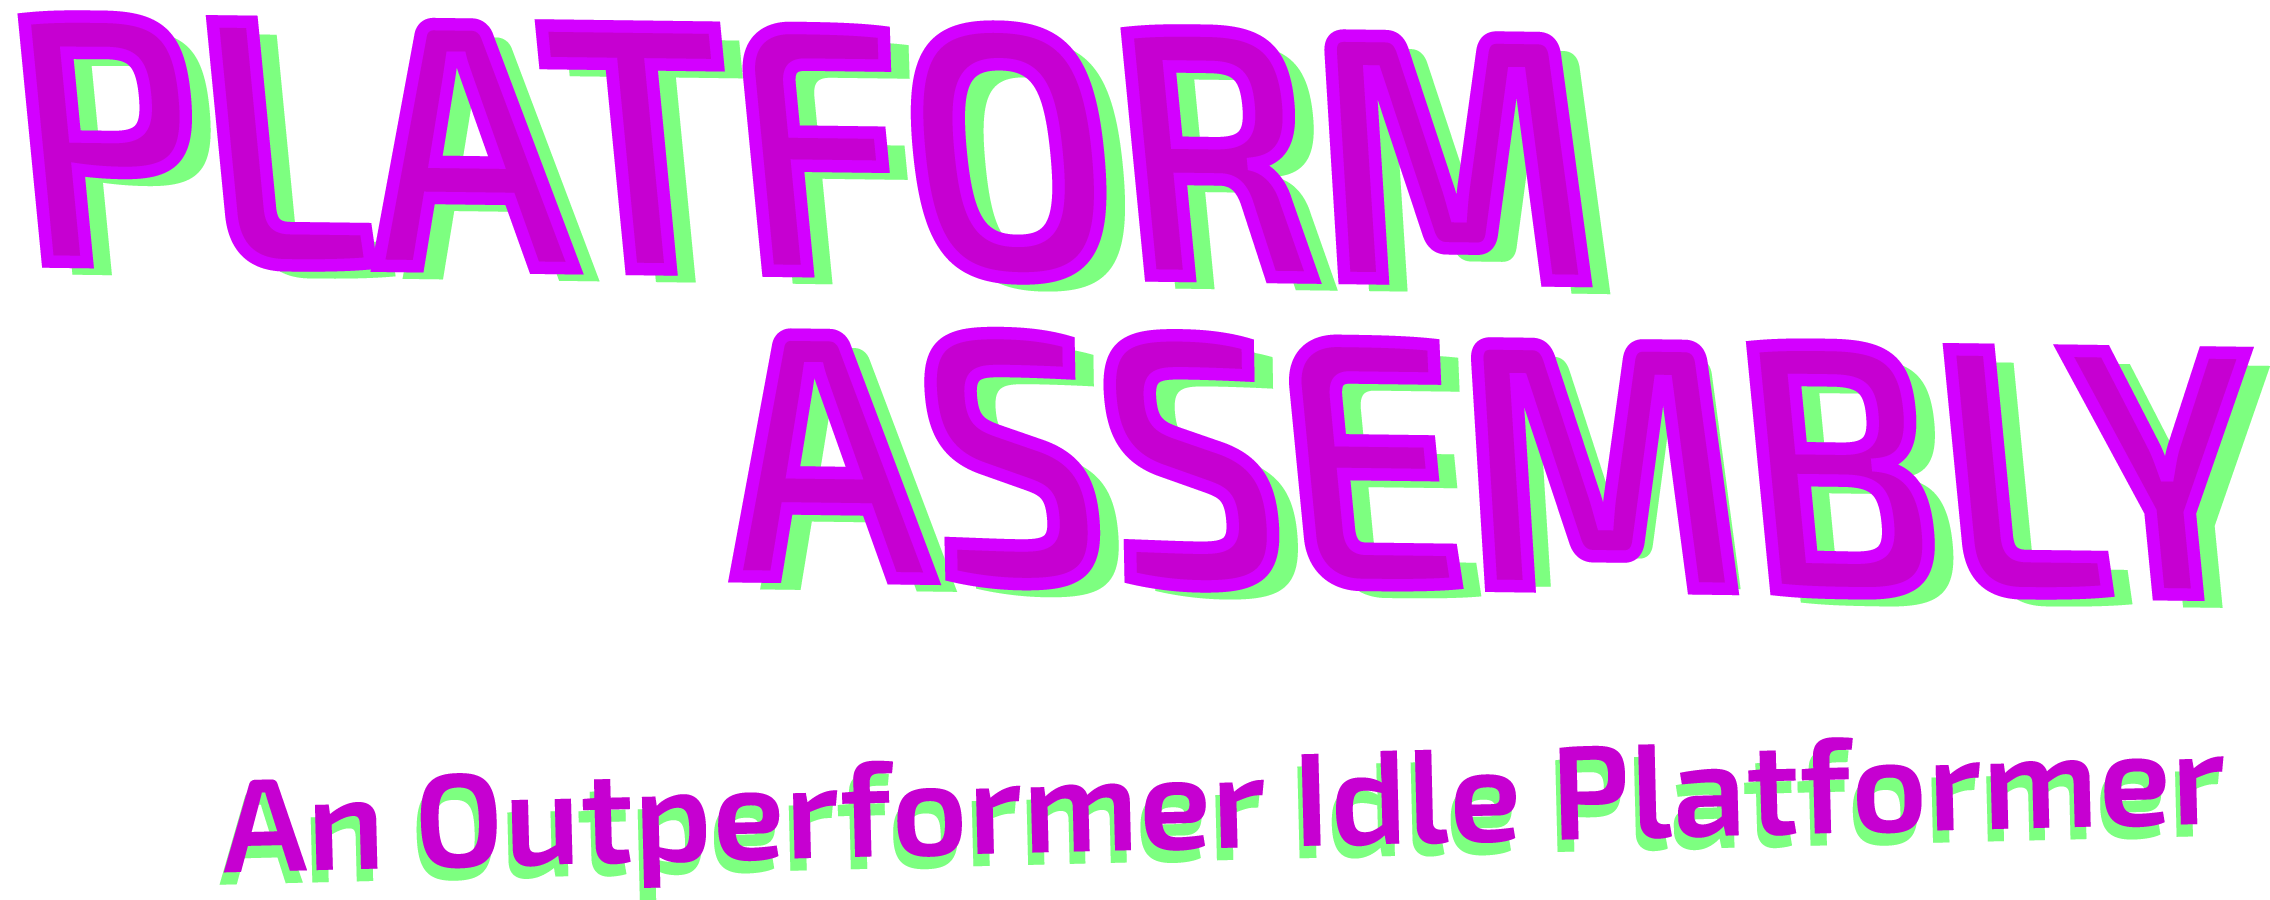 Platform Assembly : An Outperformer Idle Platformer